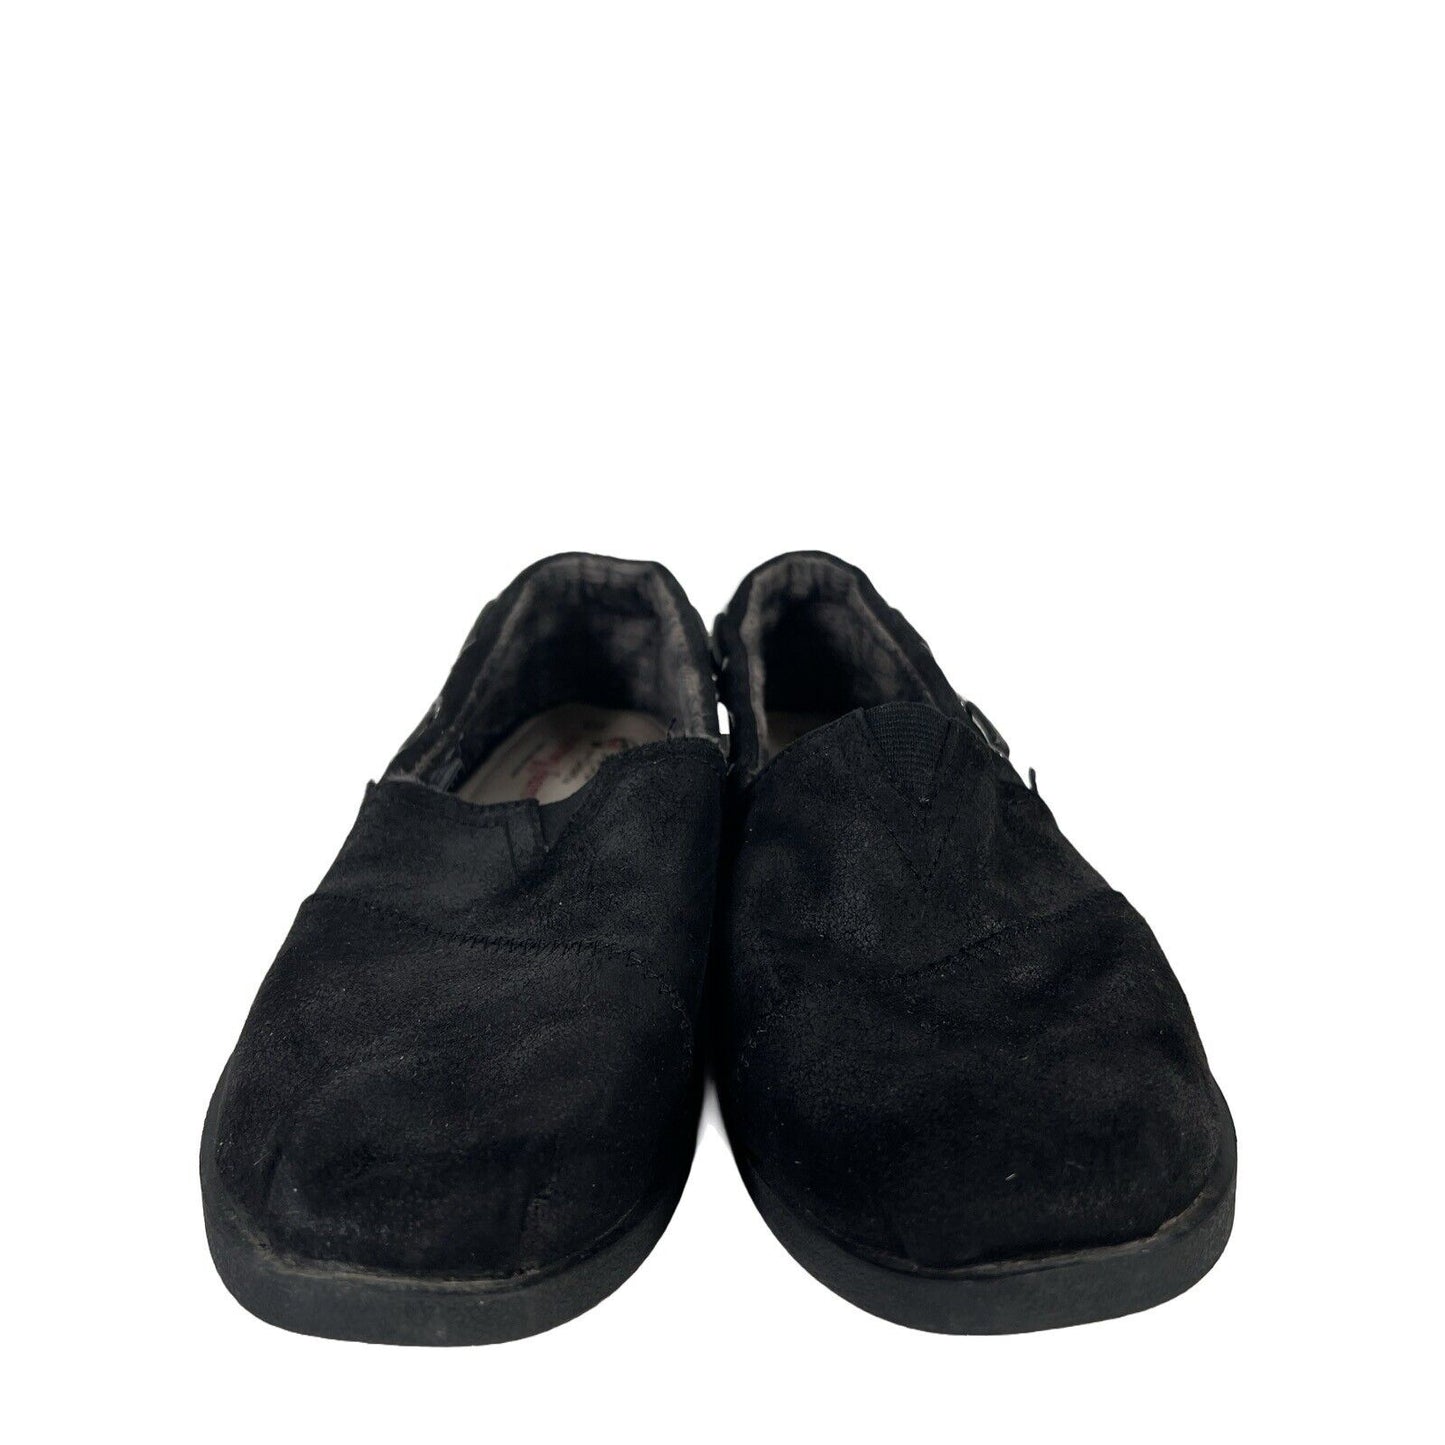 Bobs Skechers Zapatos con forro polar Chill Luxe de tela negra para mujer - 8